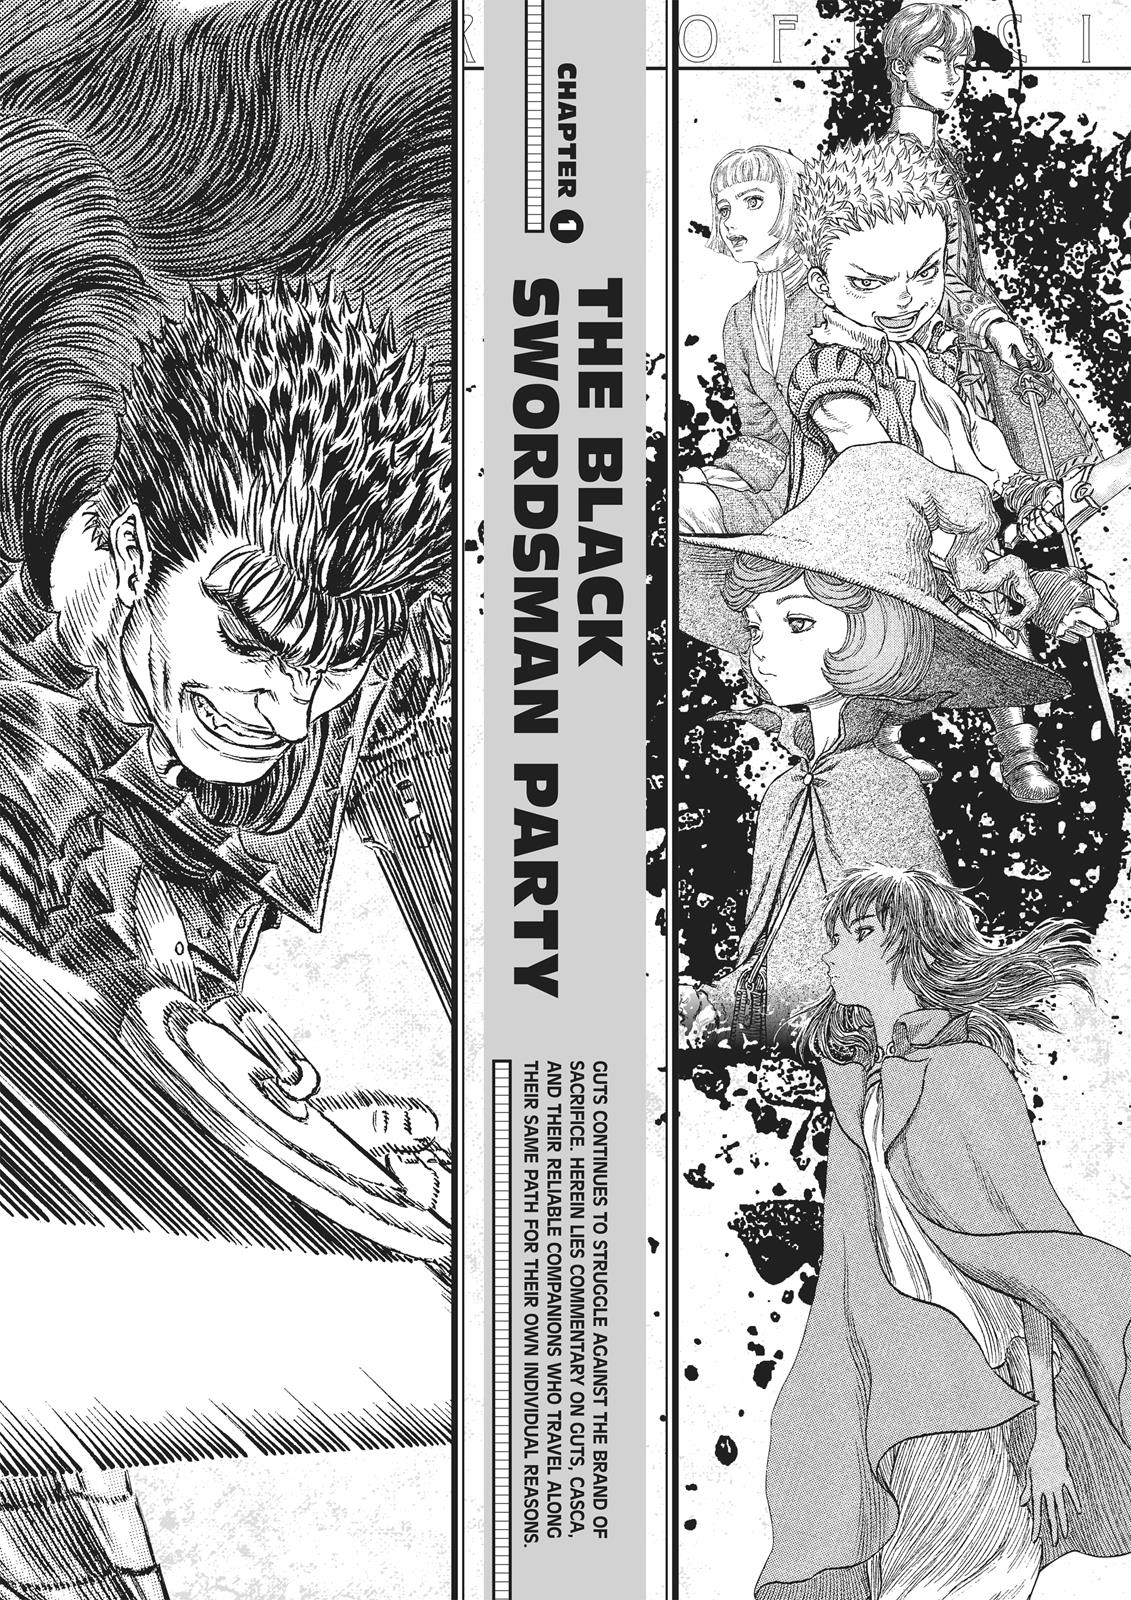 Berserk Manga Chapter 350.5 image 012